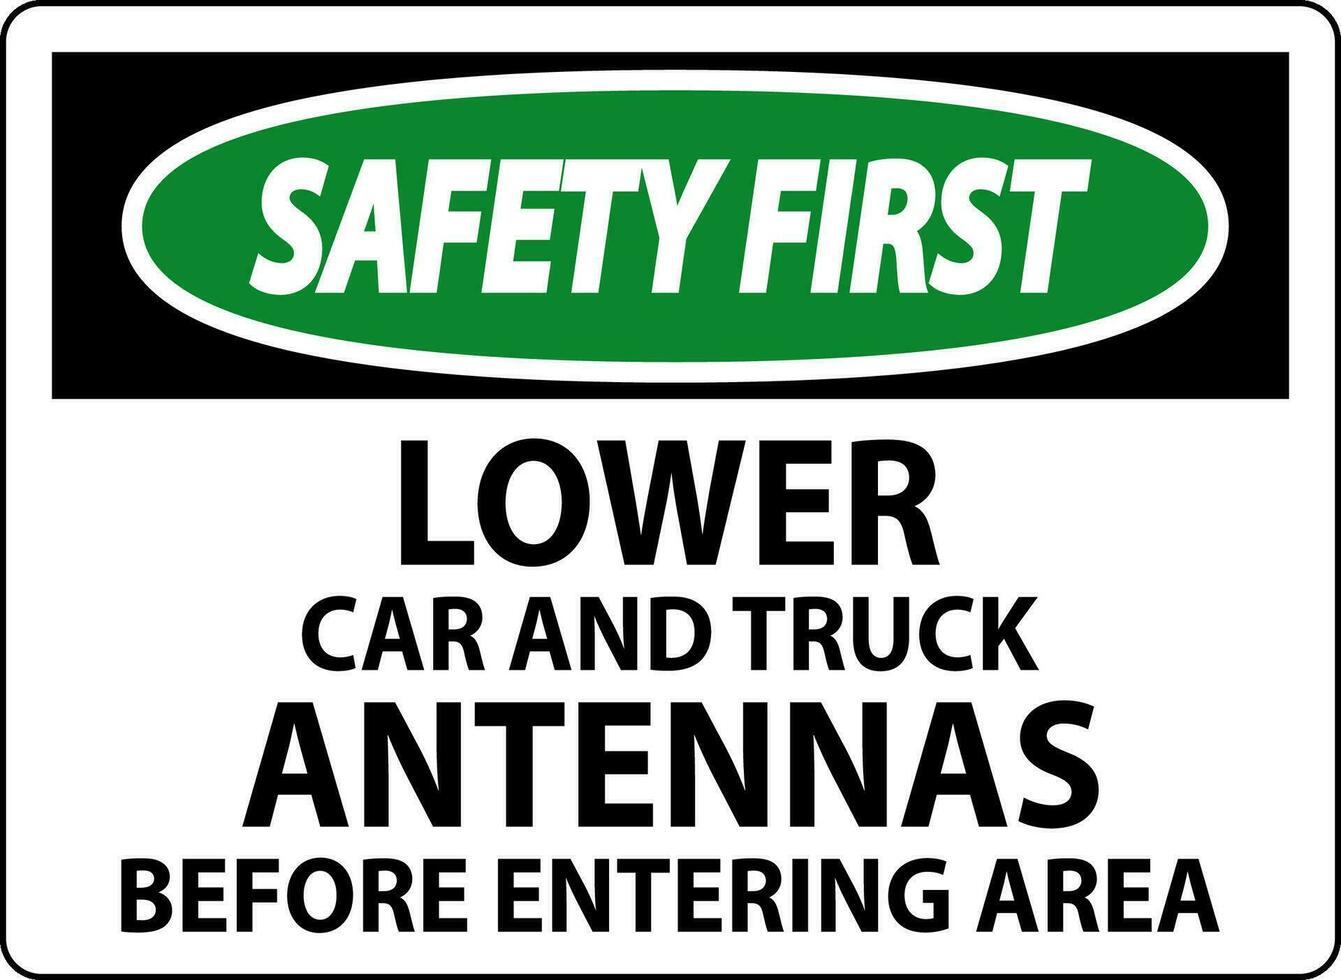 veiligheid eerste teken lager auto en vrachtauto antennes voordat binnengaan Oppervlakte vector